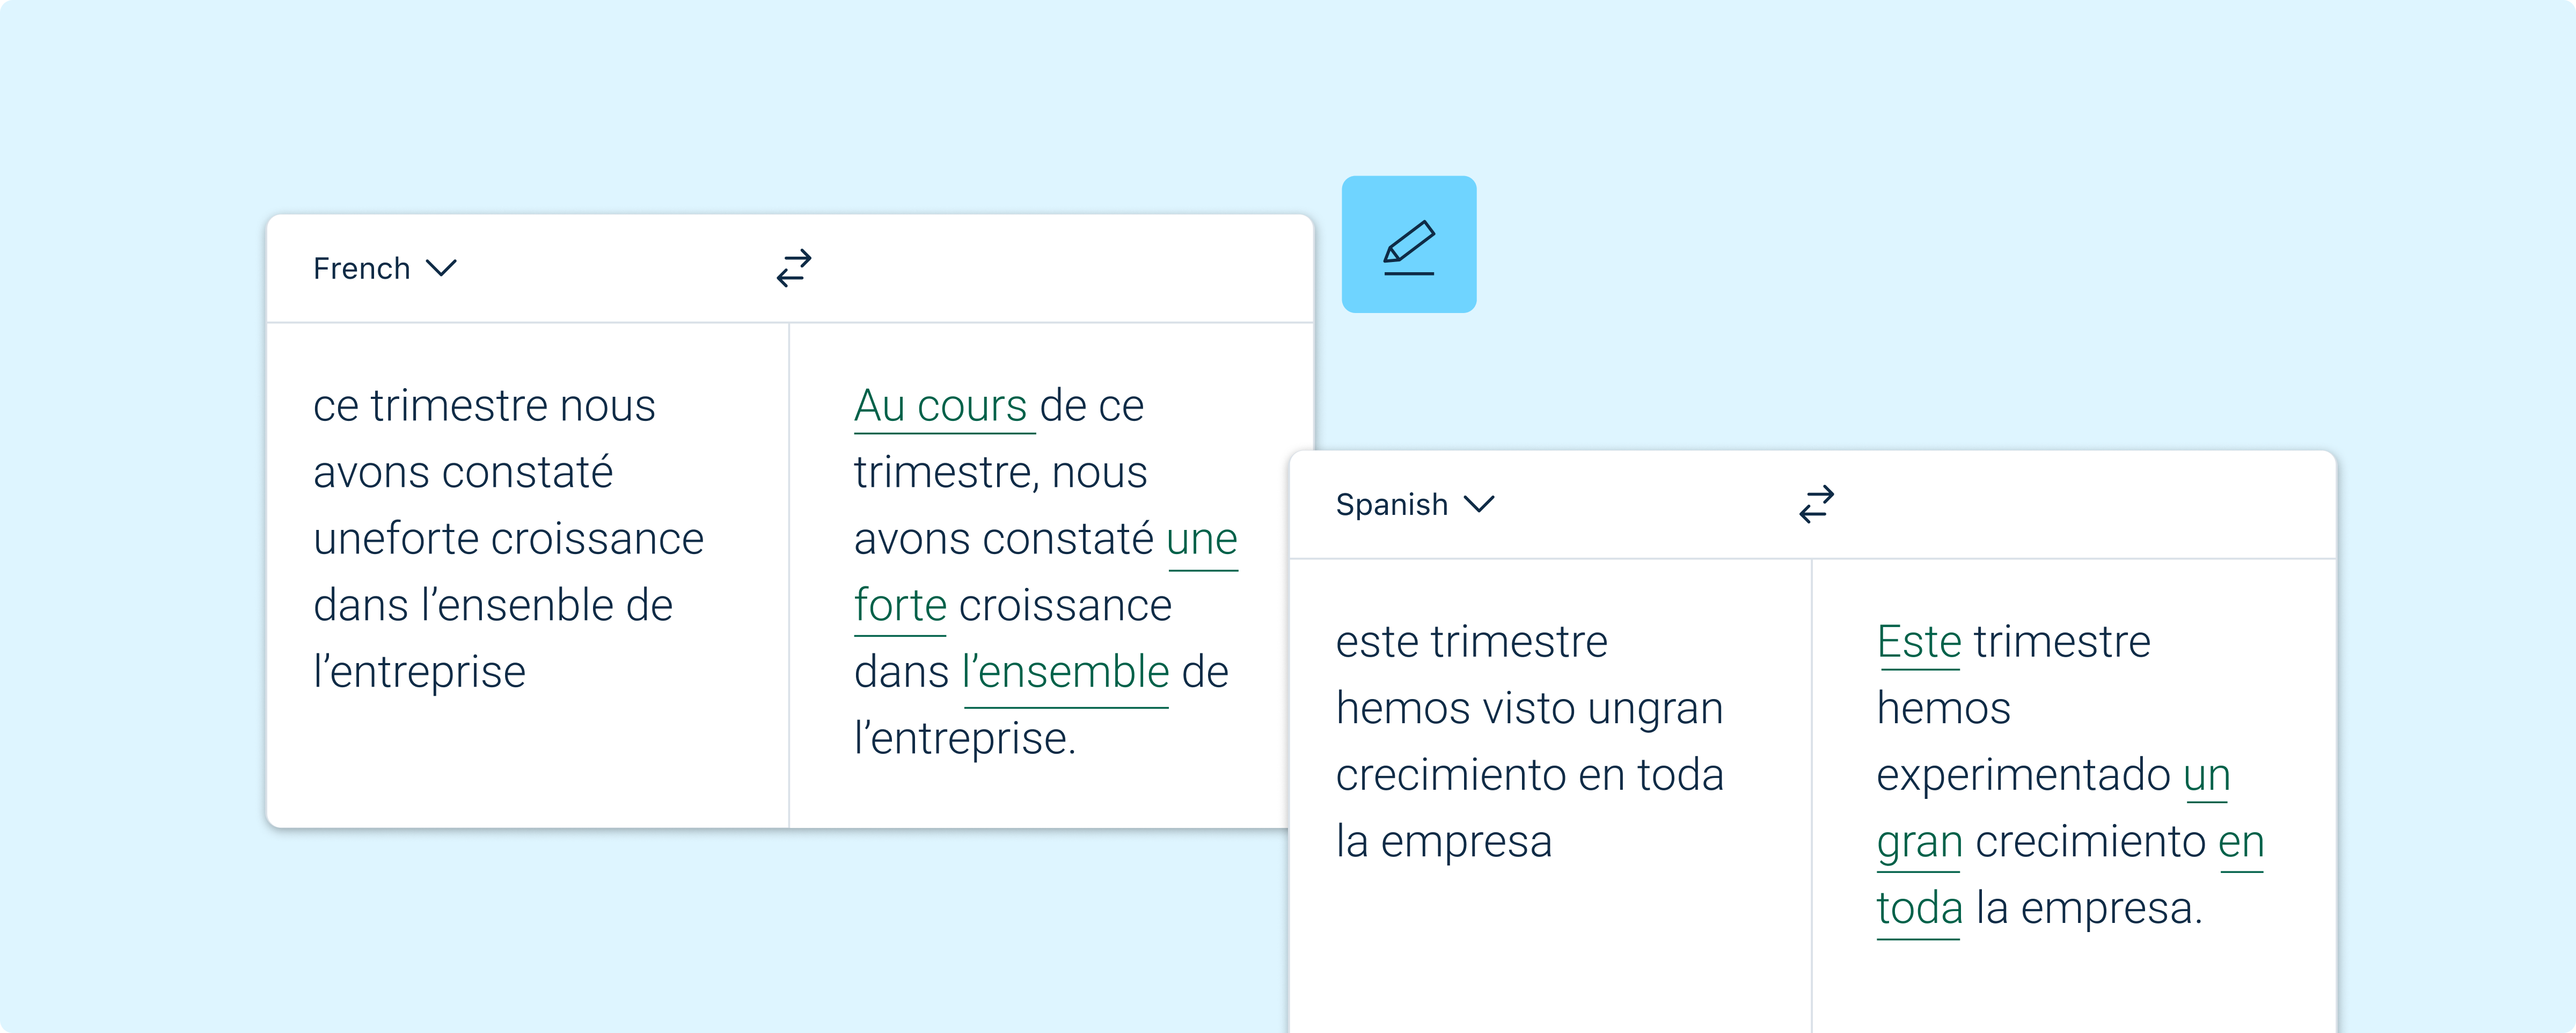 Ilustracja interfejsu UI DeepL Write pokazująca korektę przykładowych błędów ortograficznych w tekstach w języku francuskim i hiszpańskim